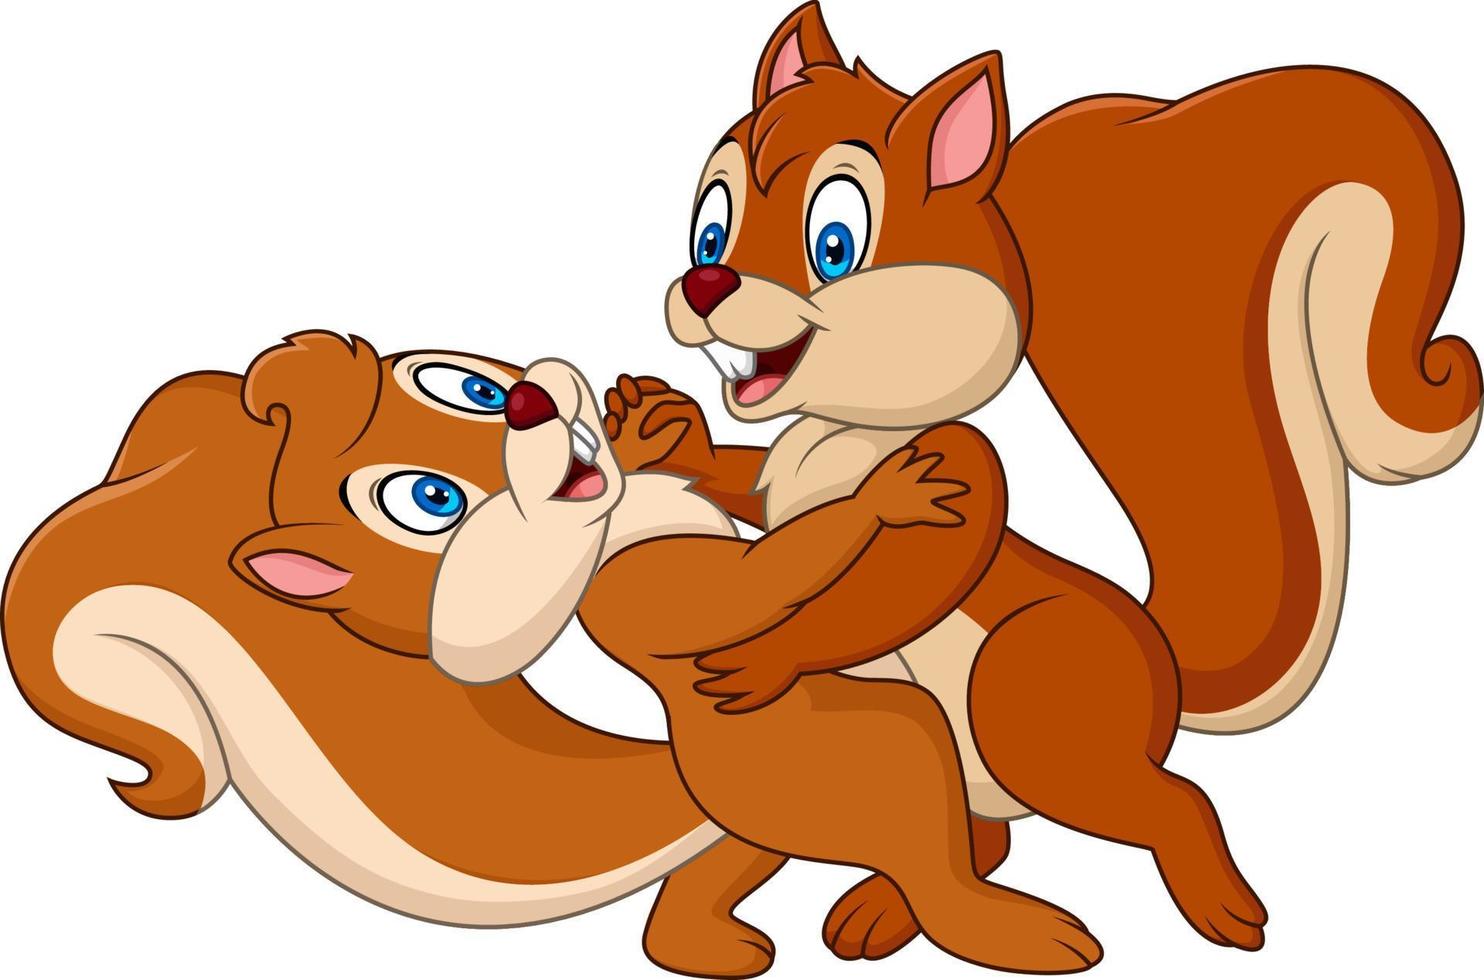 Cute couple squirrel dancing vector